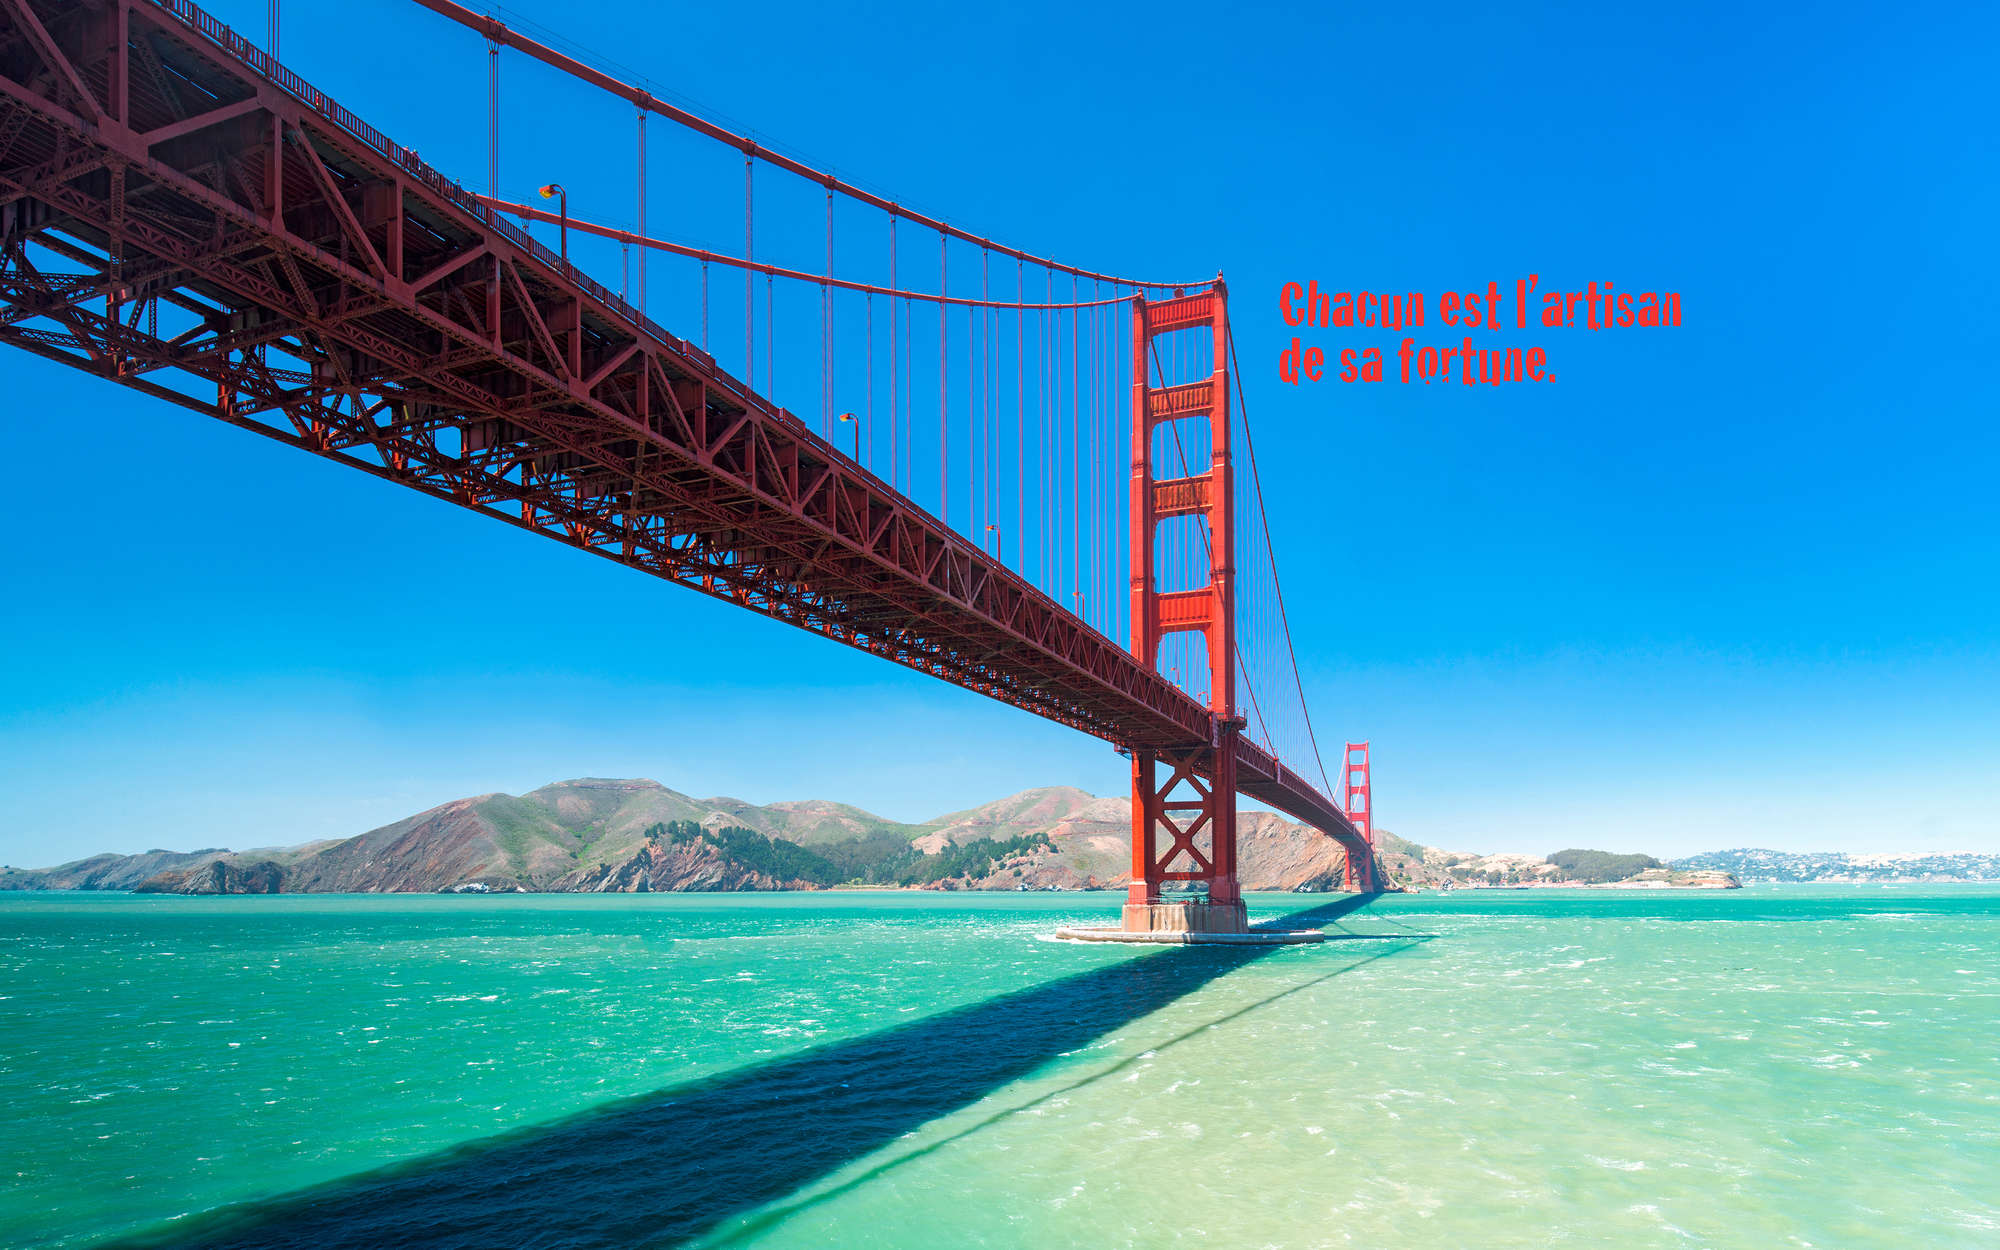             Mural del puente Golden Gate con letras en francés - Tela no tejida lisa de alta calidad
        